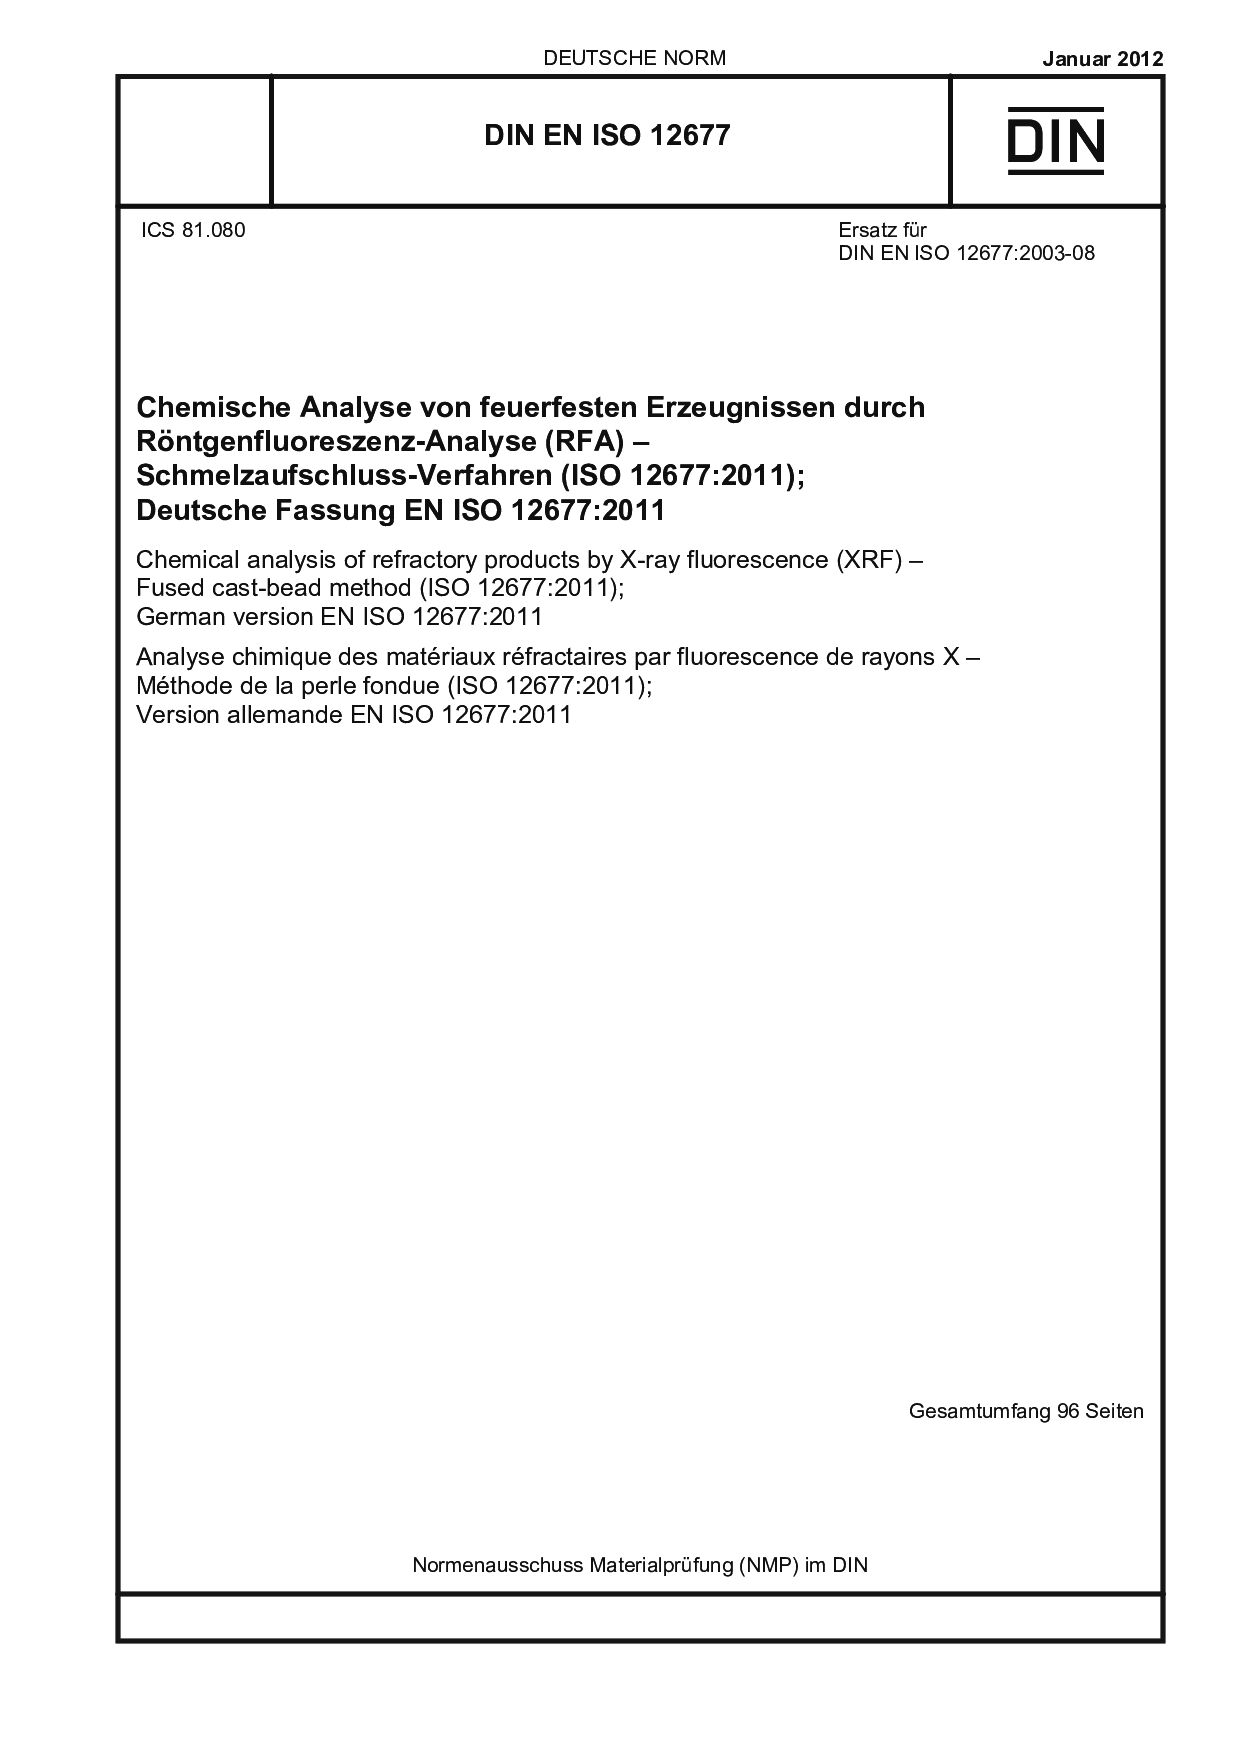 DIN EN ISO 12677:2012封面图